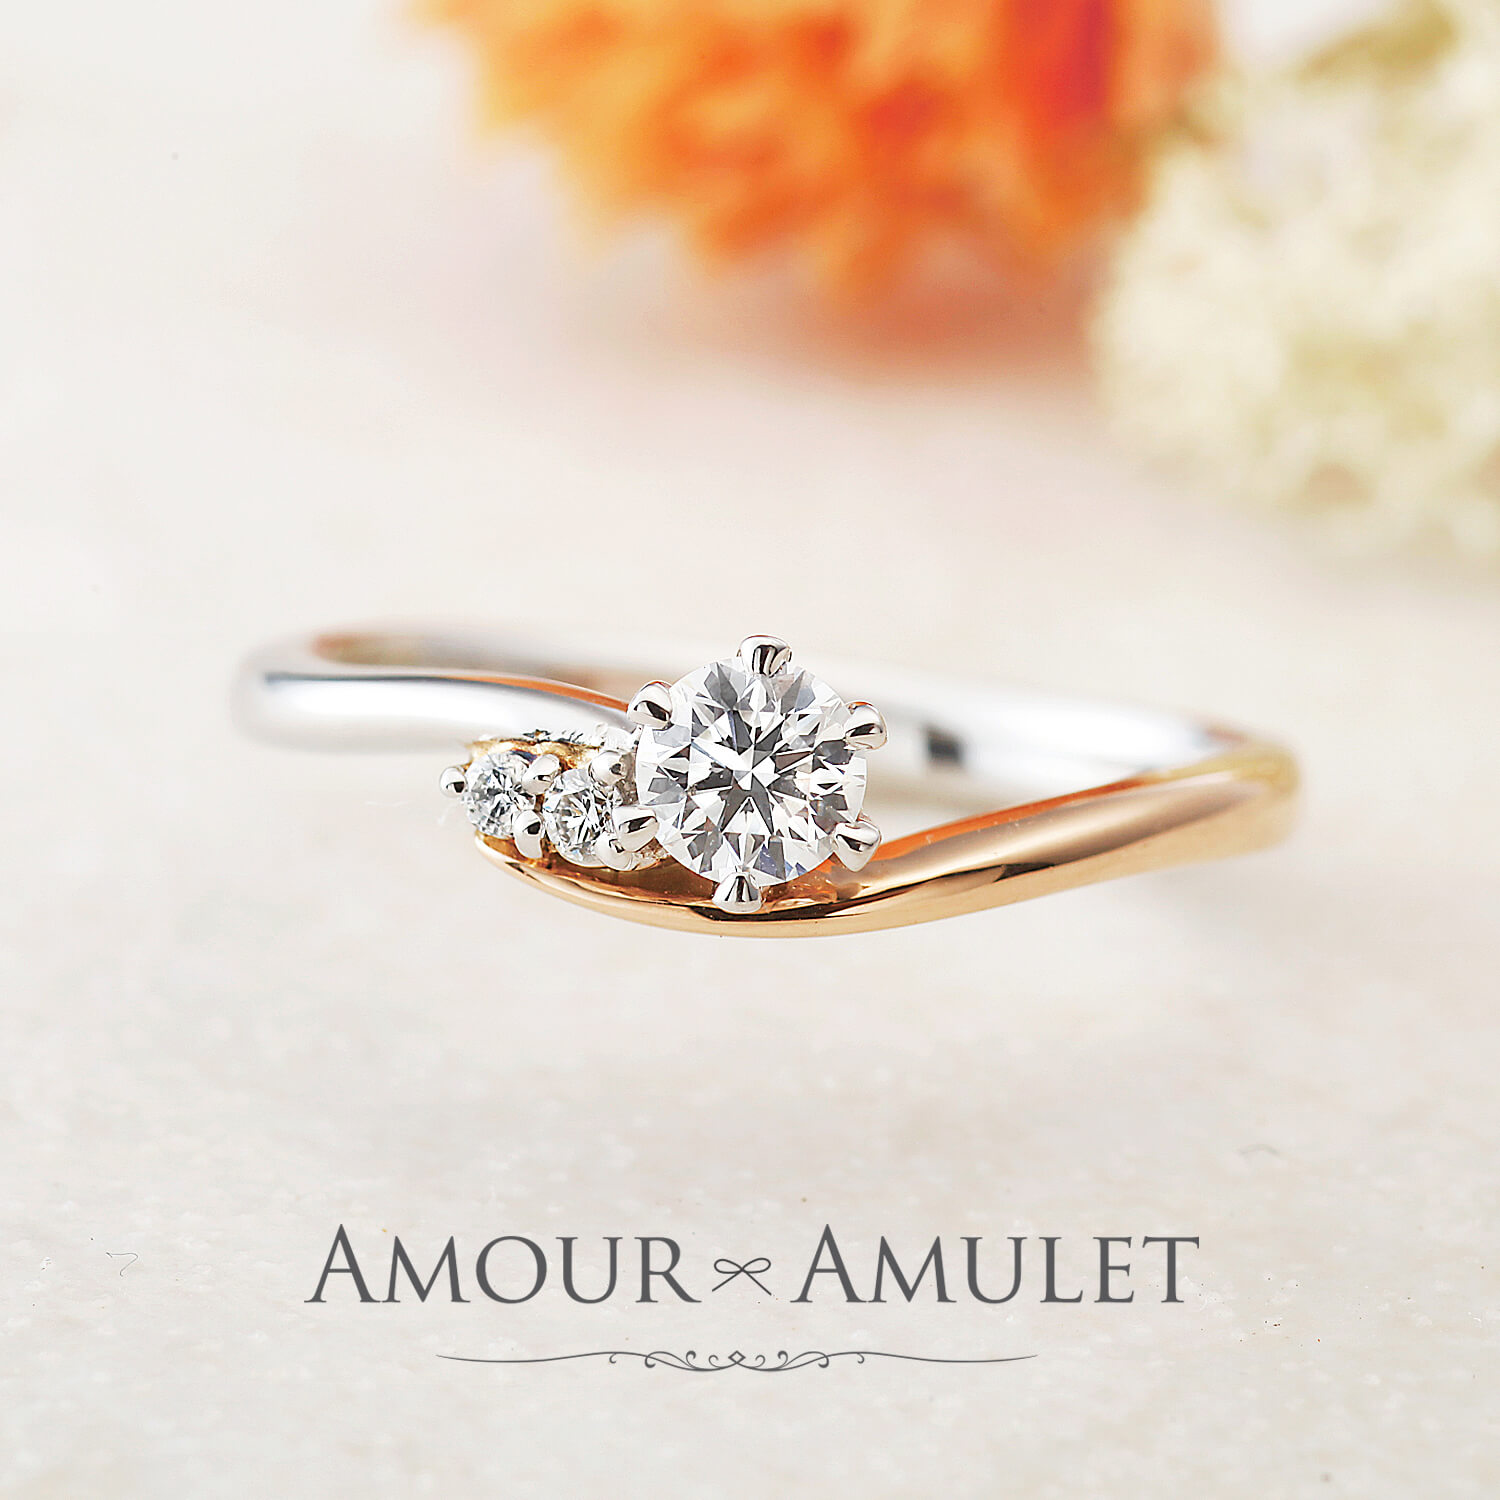 AMOURAMULETアムールアミュレットの婚約指輪BONHEURボヌール